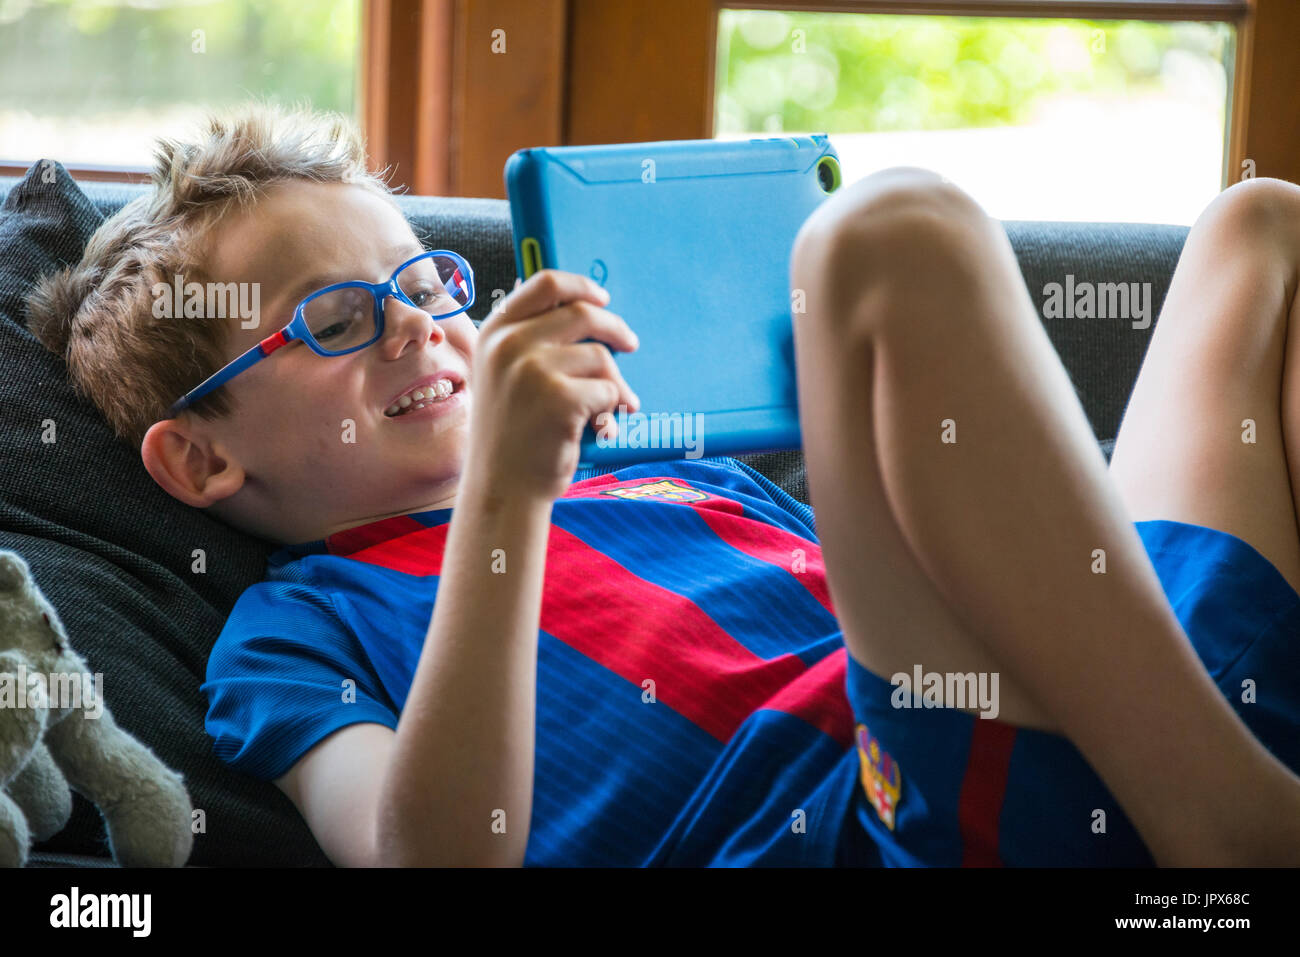 Jeune garçon, 6 ans, jouer à des jeux sur tablette, close-up Banque D'Images